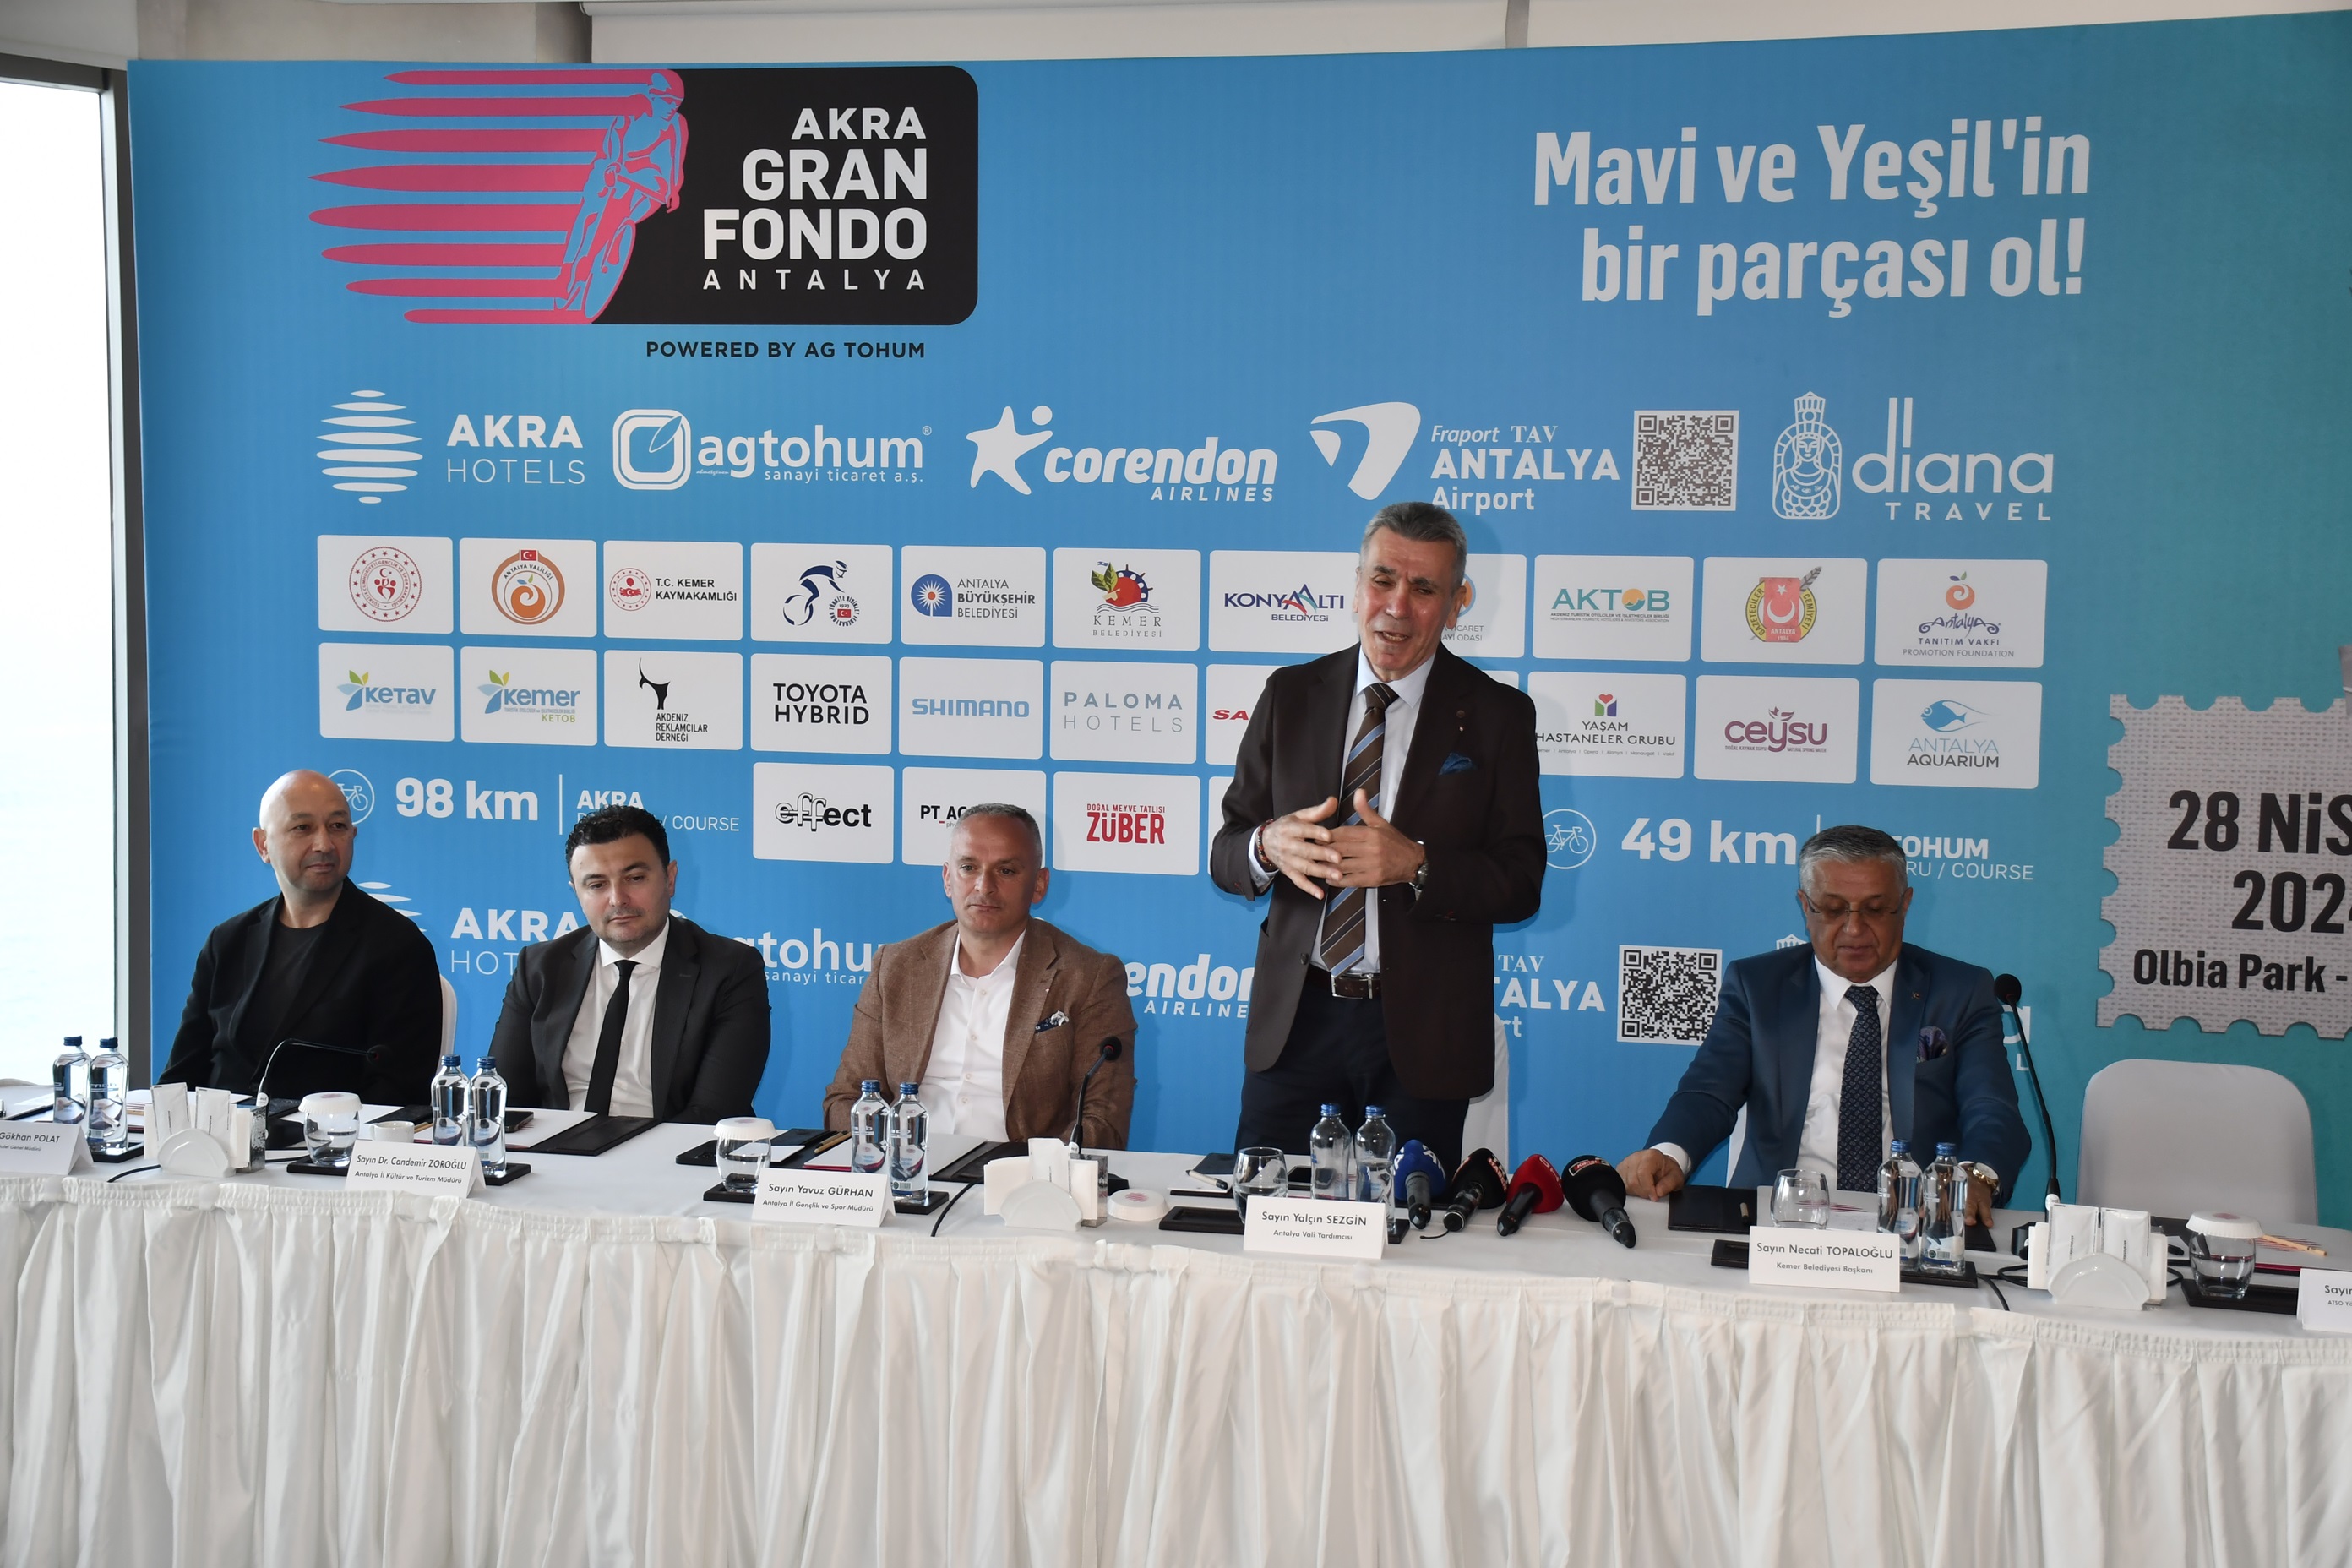 Akra Gran Fondo Antalya’nin 6Ncisi Basi 45523 (1)